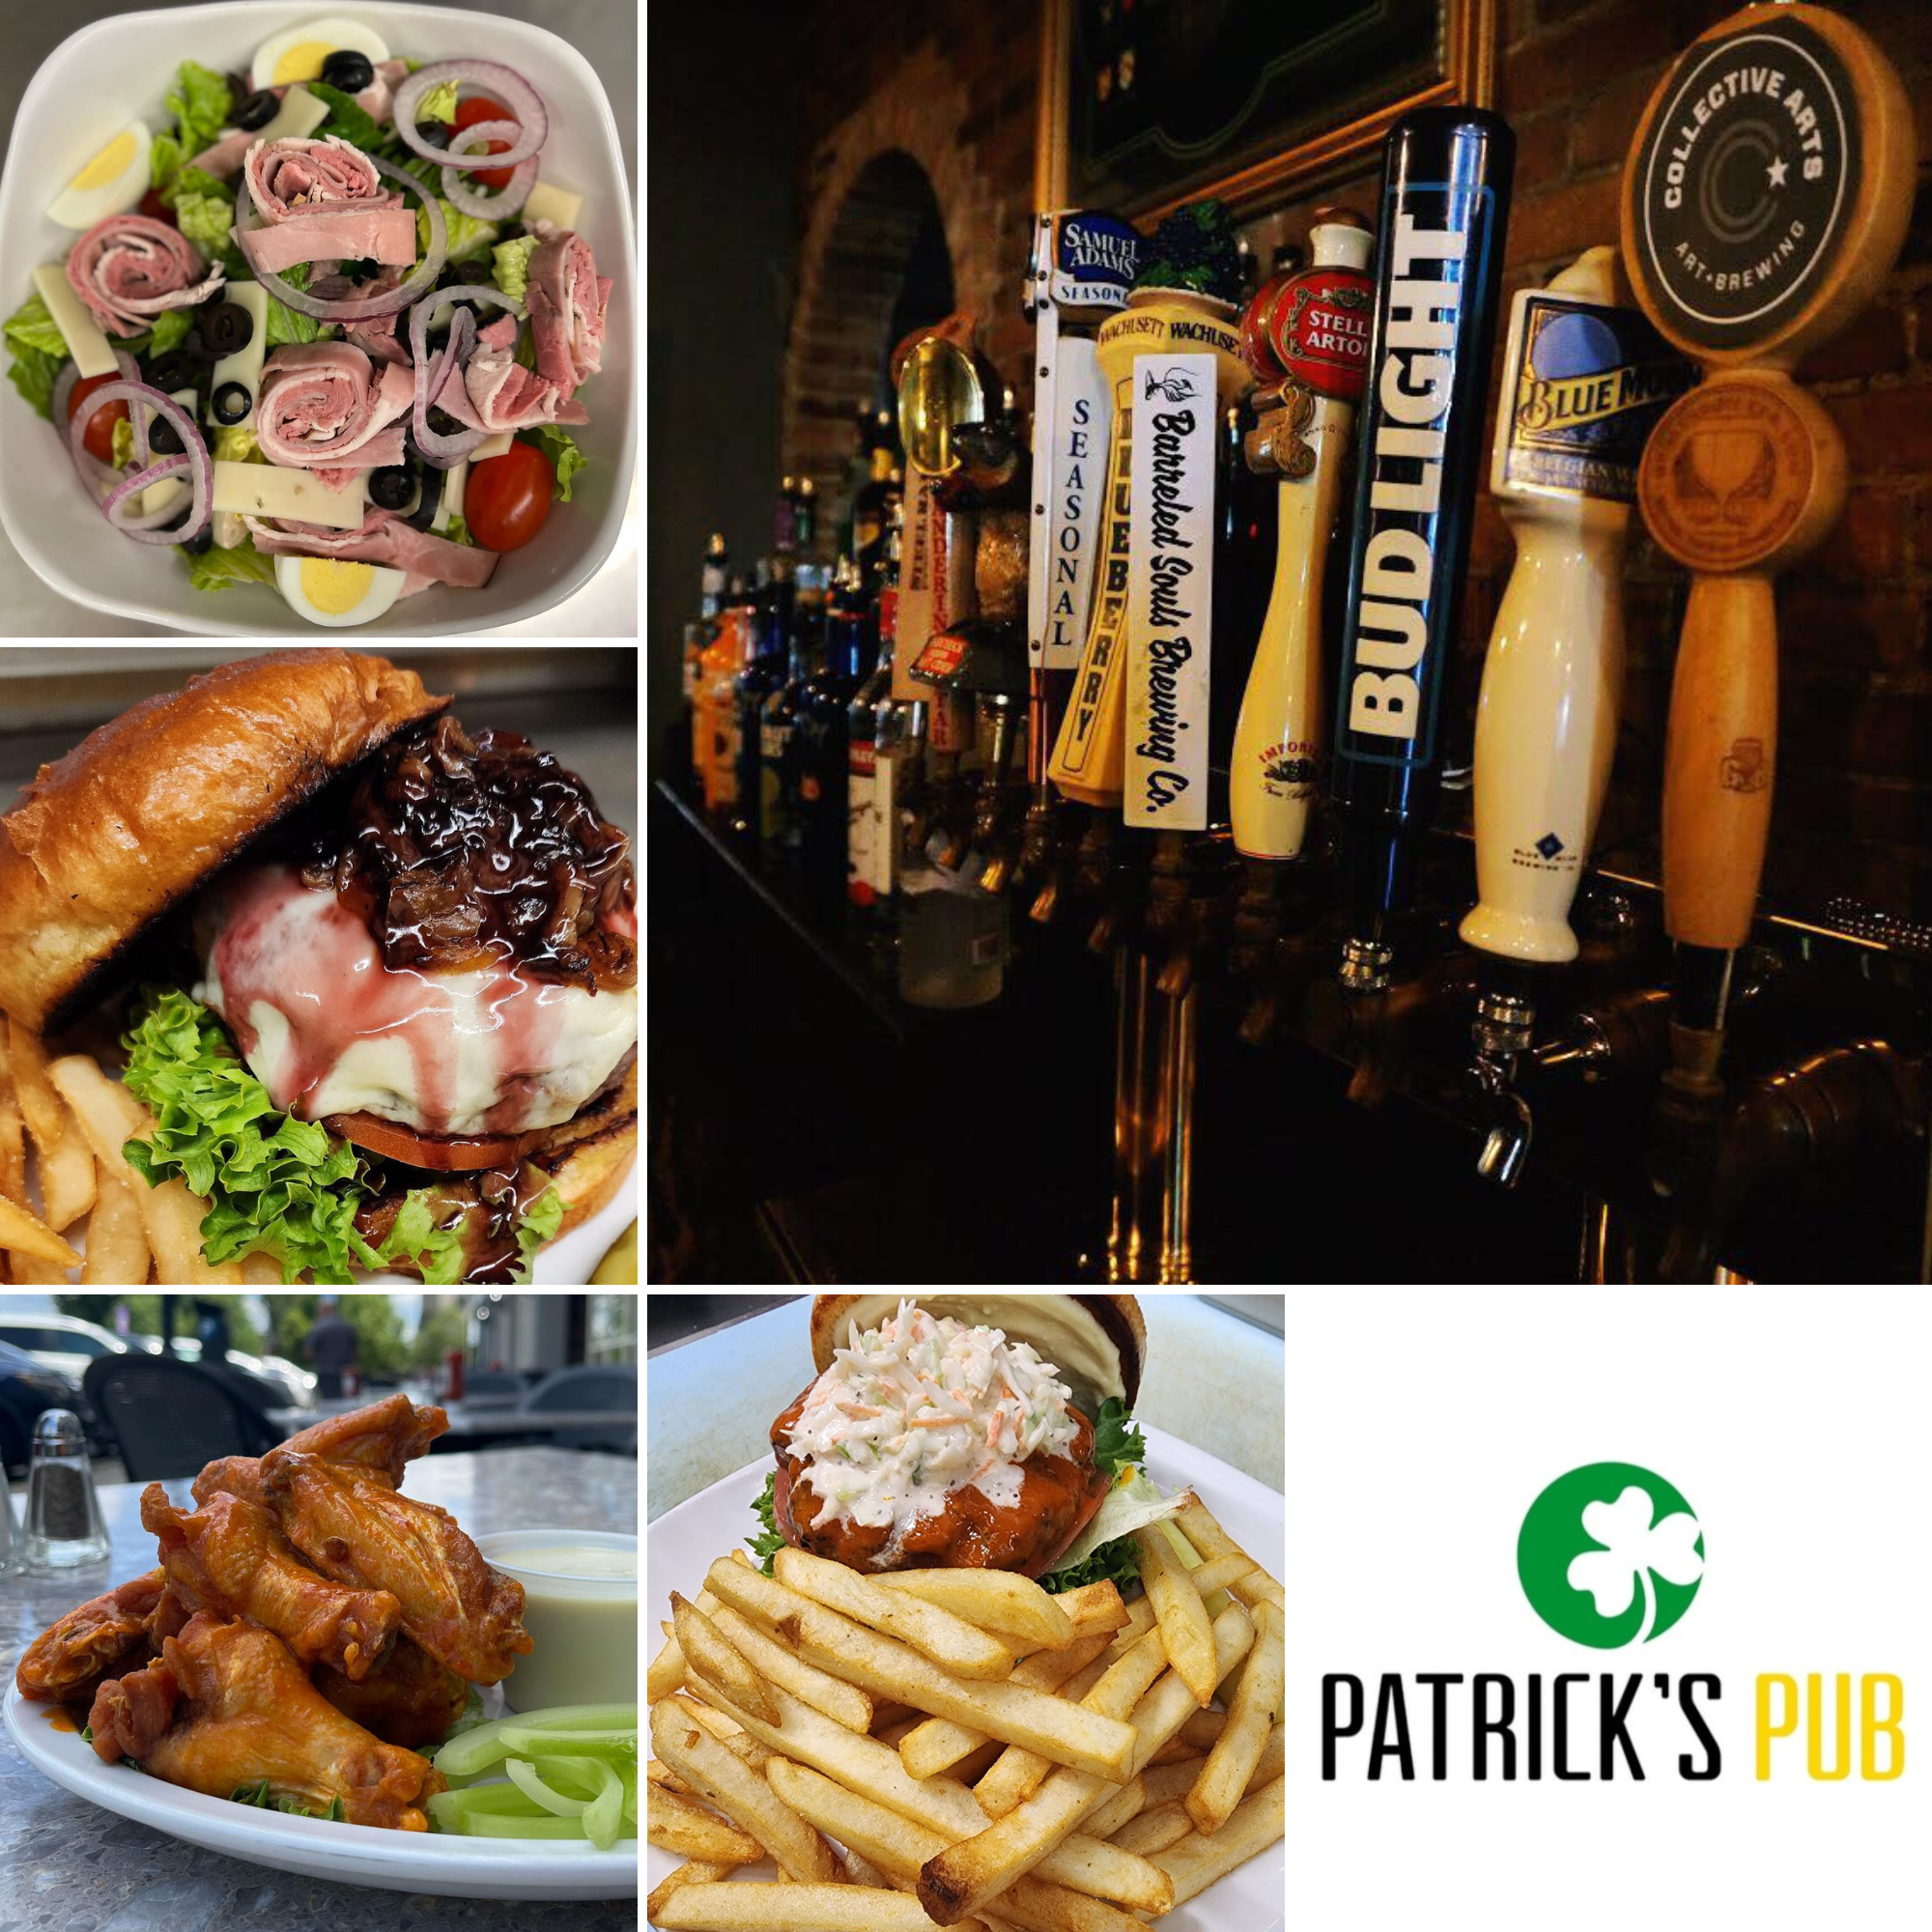 Patrick’s Pub Pittsfield MA